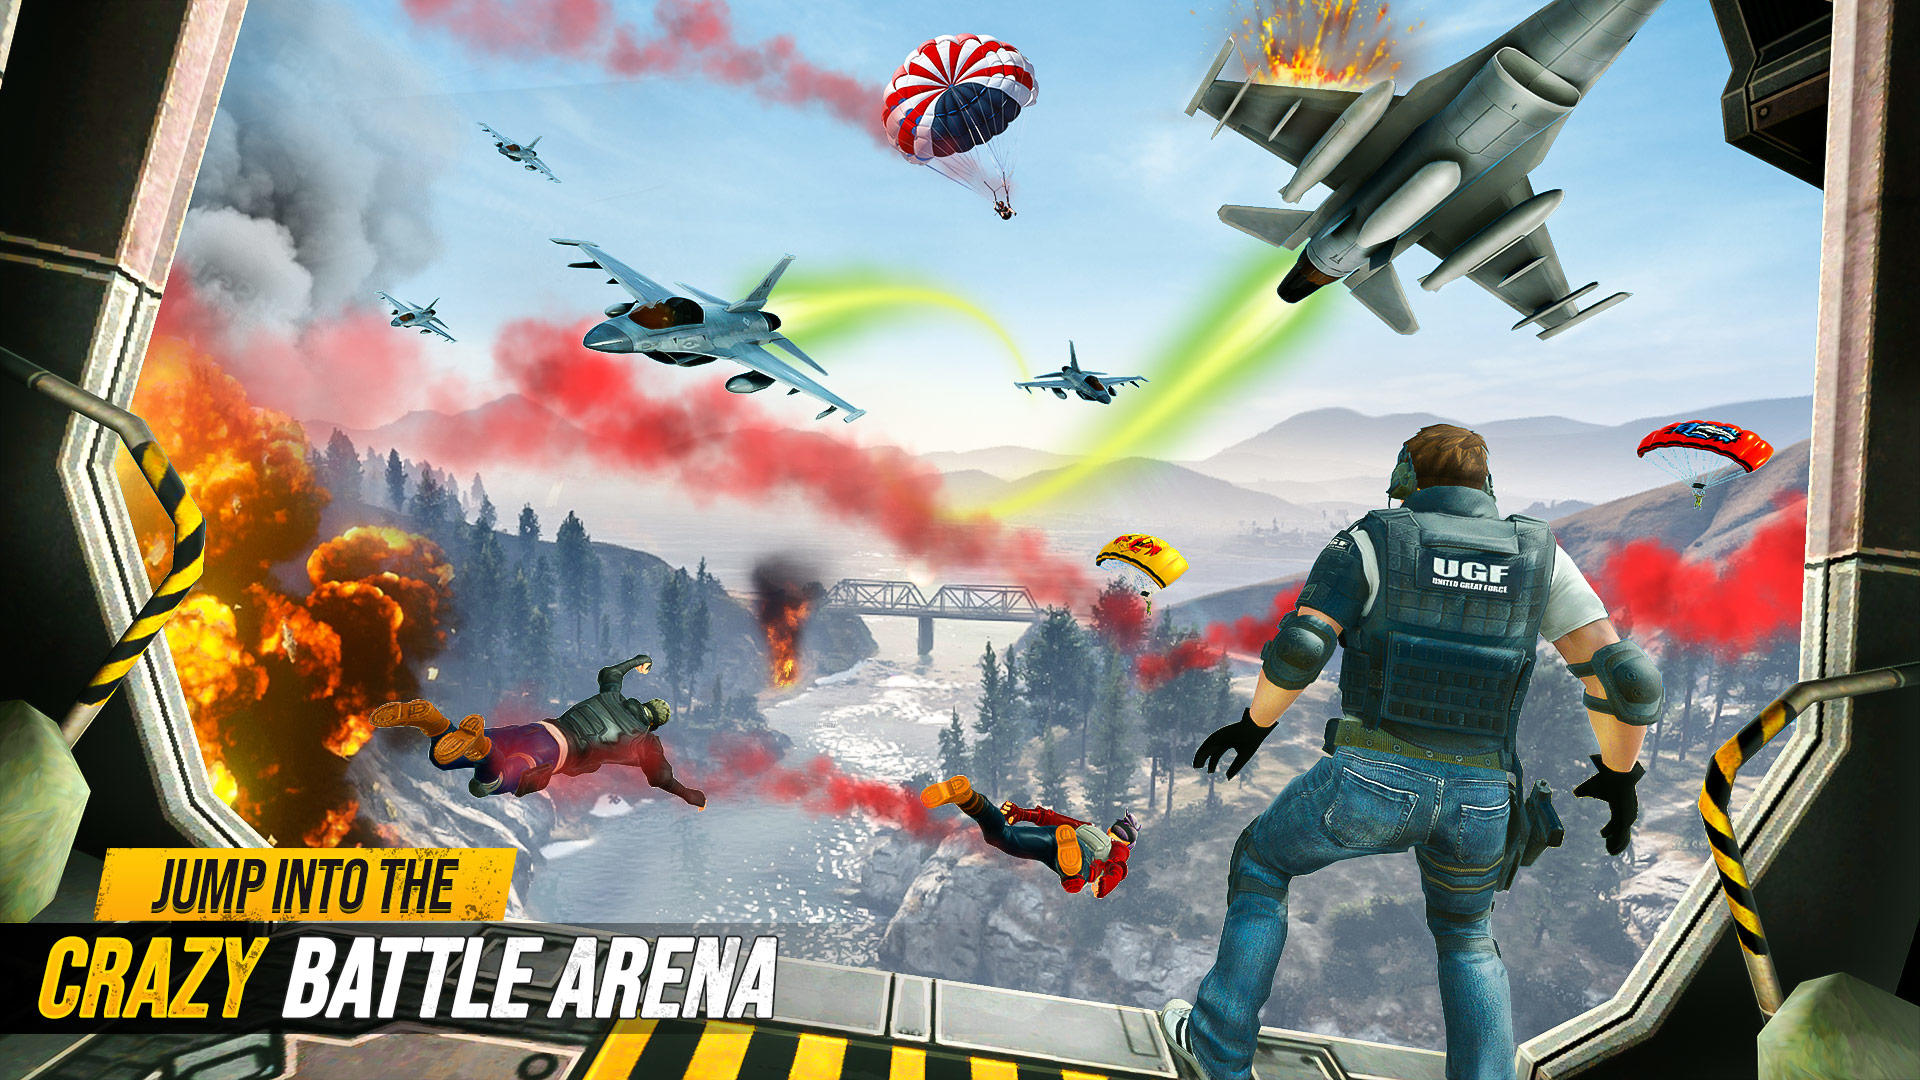 Screenshot 1 of Battle Fire - игра-стрелялка 1.8